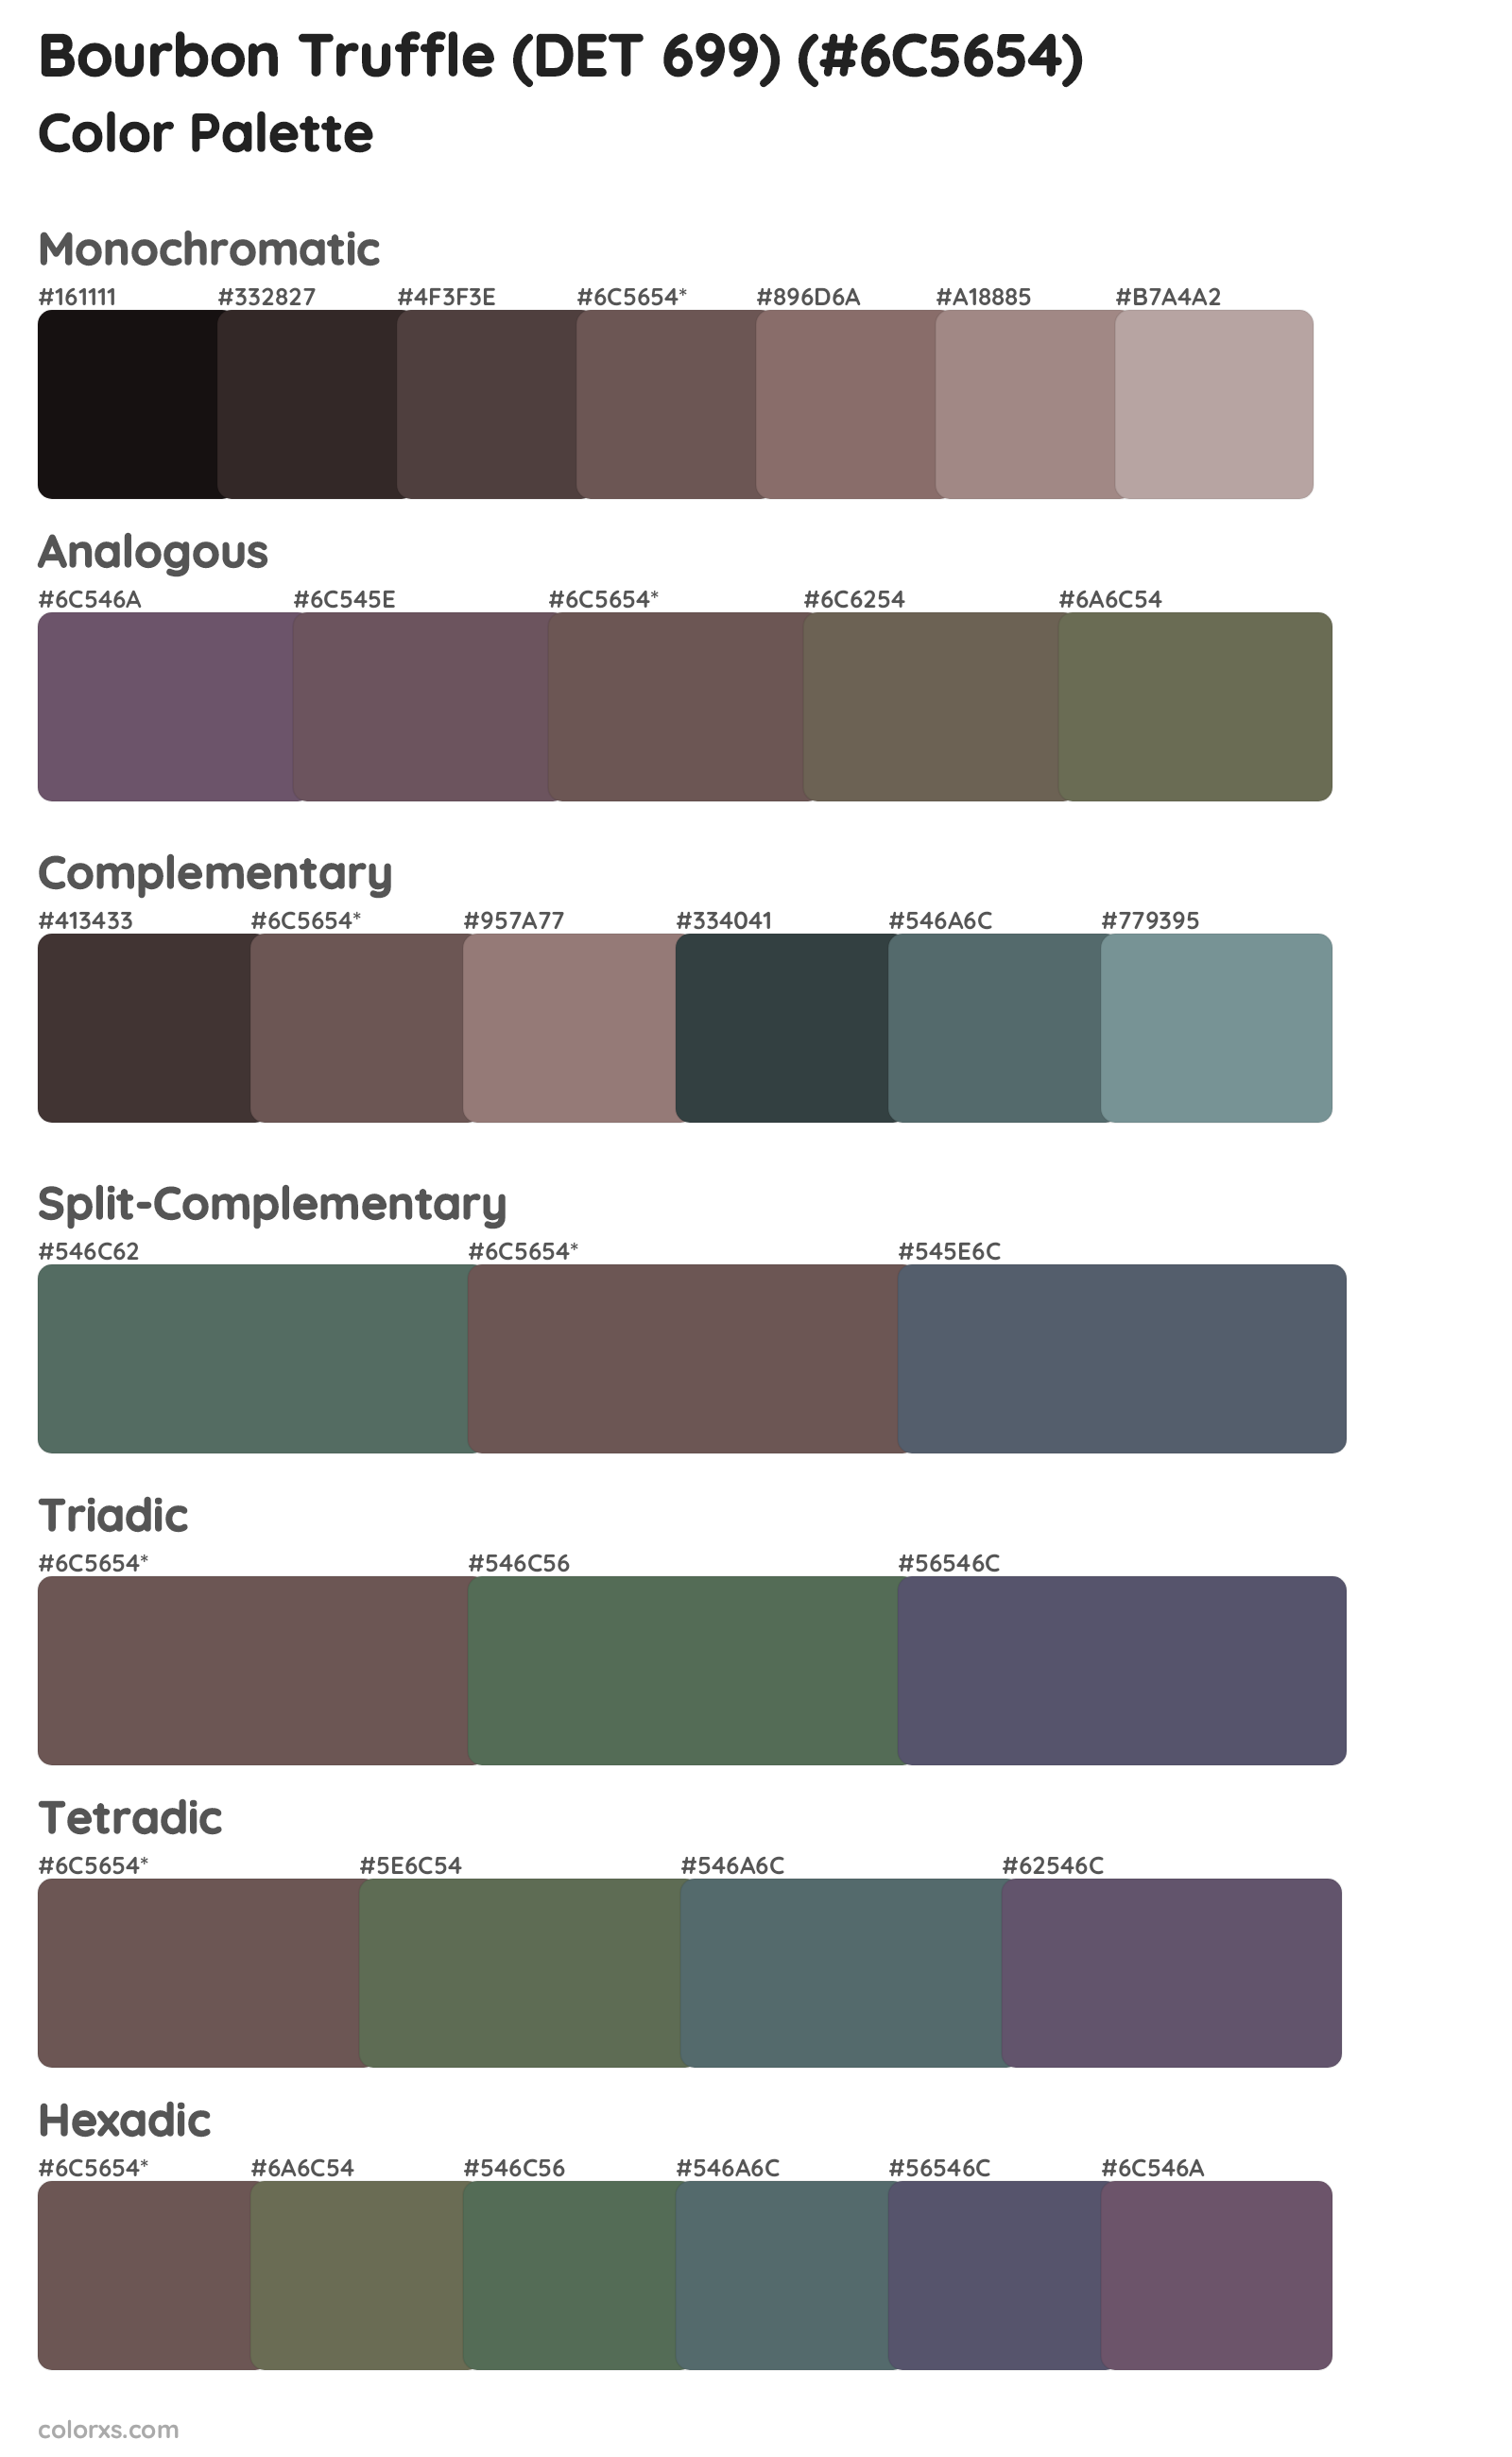 Bourbon Truffle (DET 699) Color Scheme Palettes